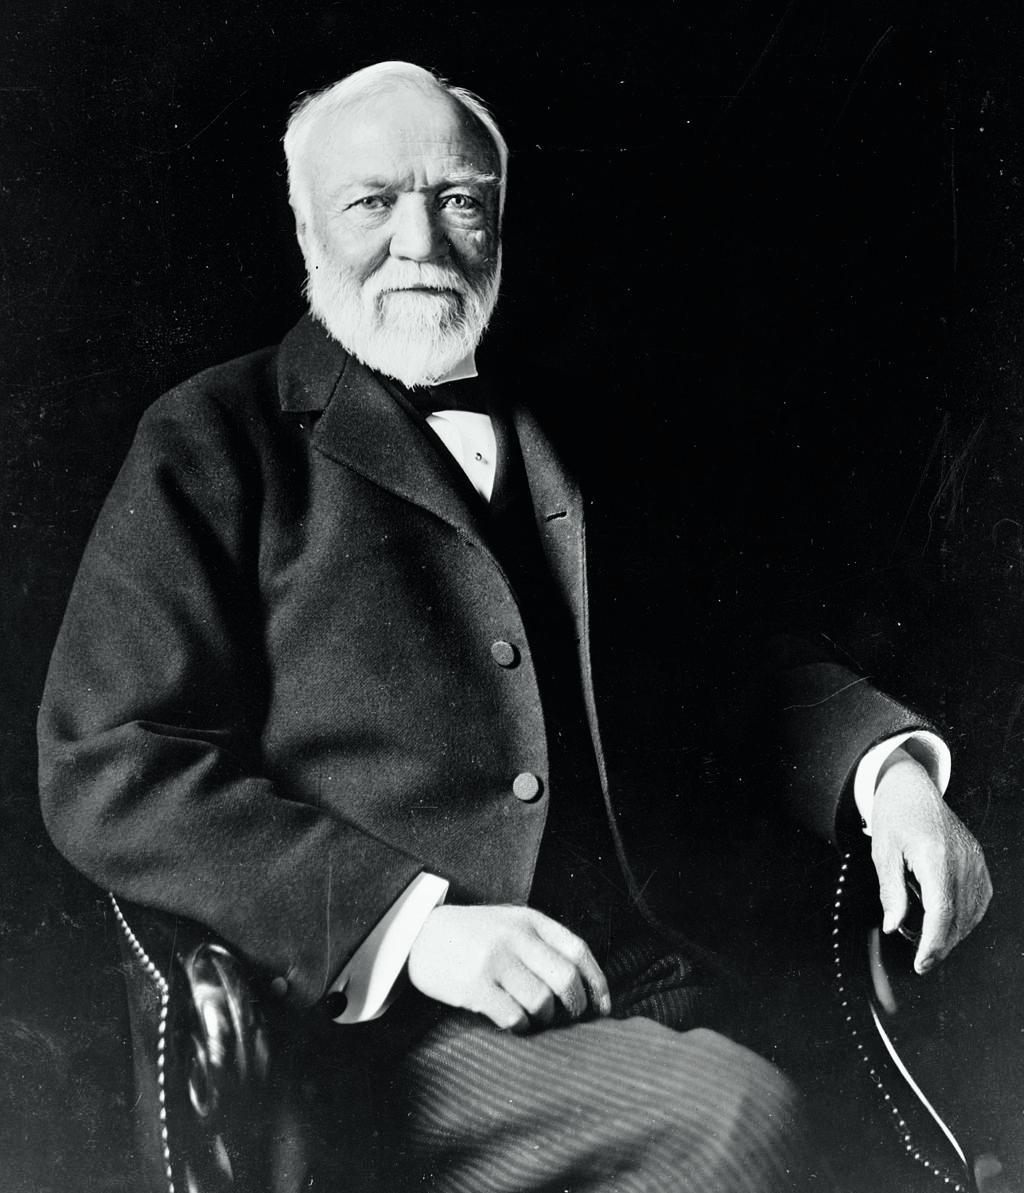 Andrew Carnegie tjente seg rik på jernbanedrift og stålproduksjon, etter å ha startet sin karrière som telegrafist.